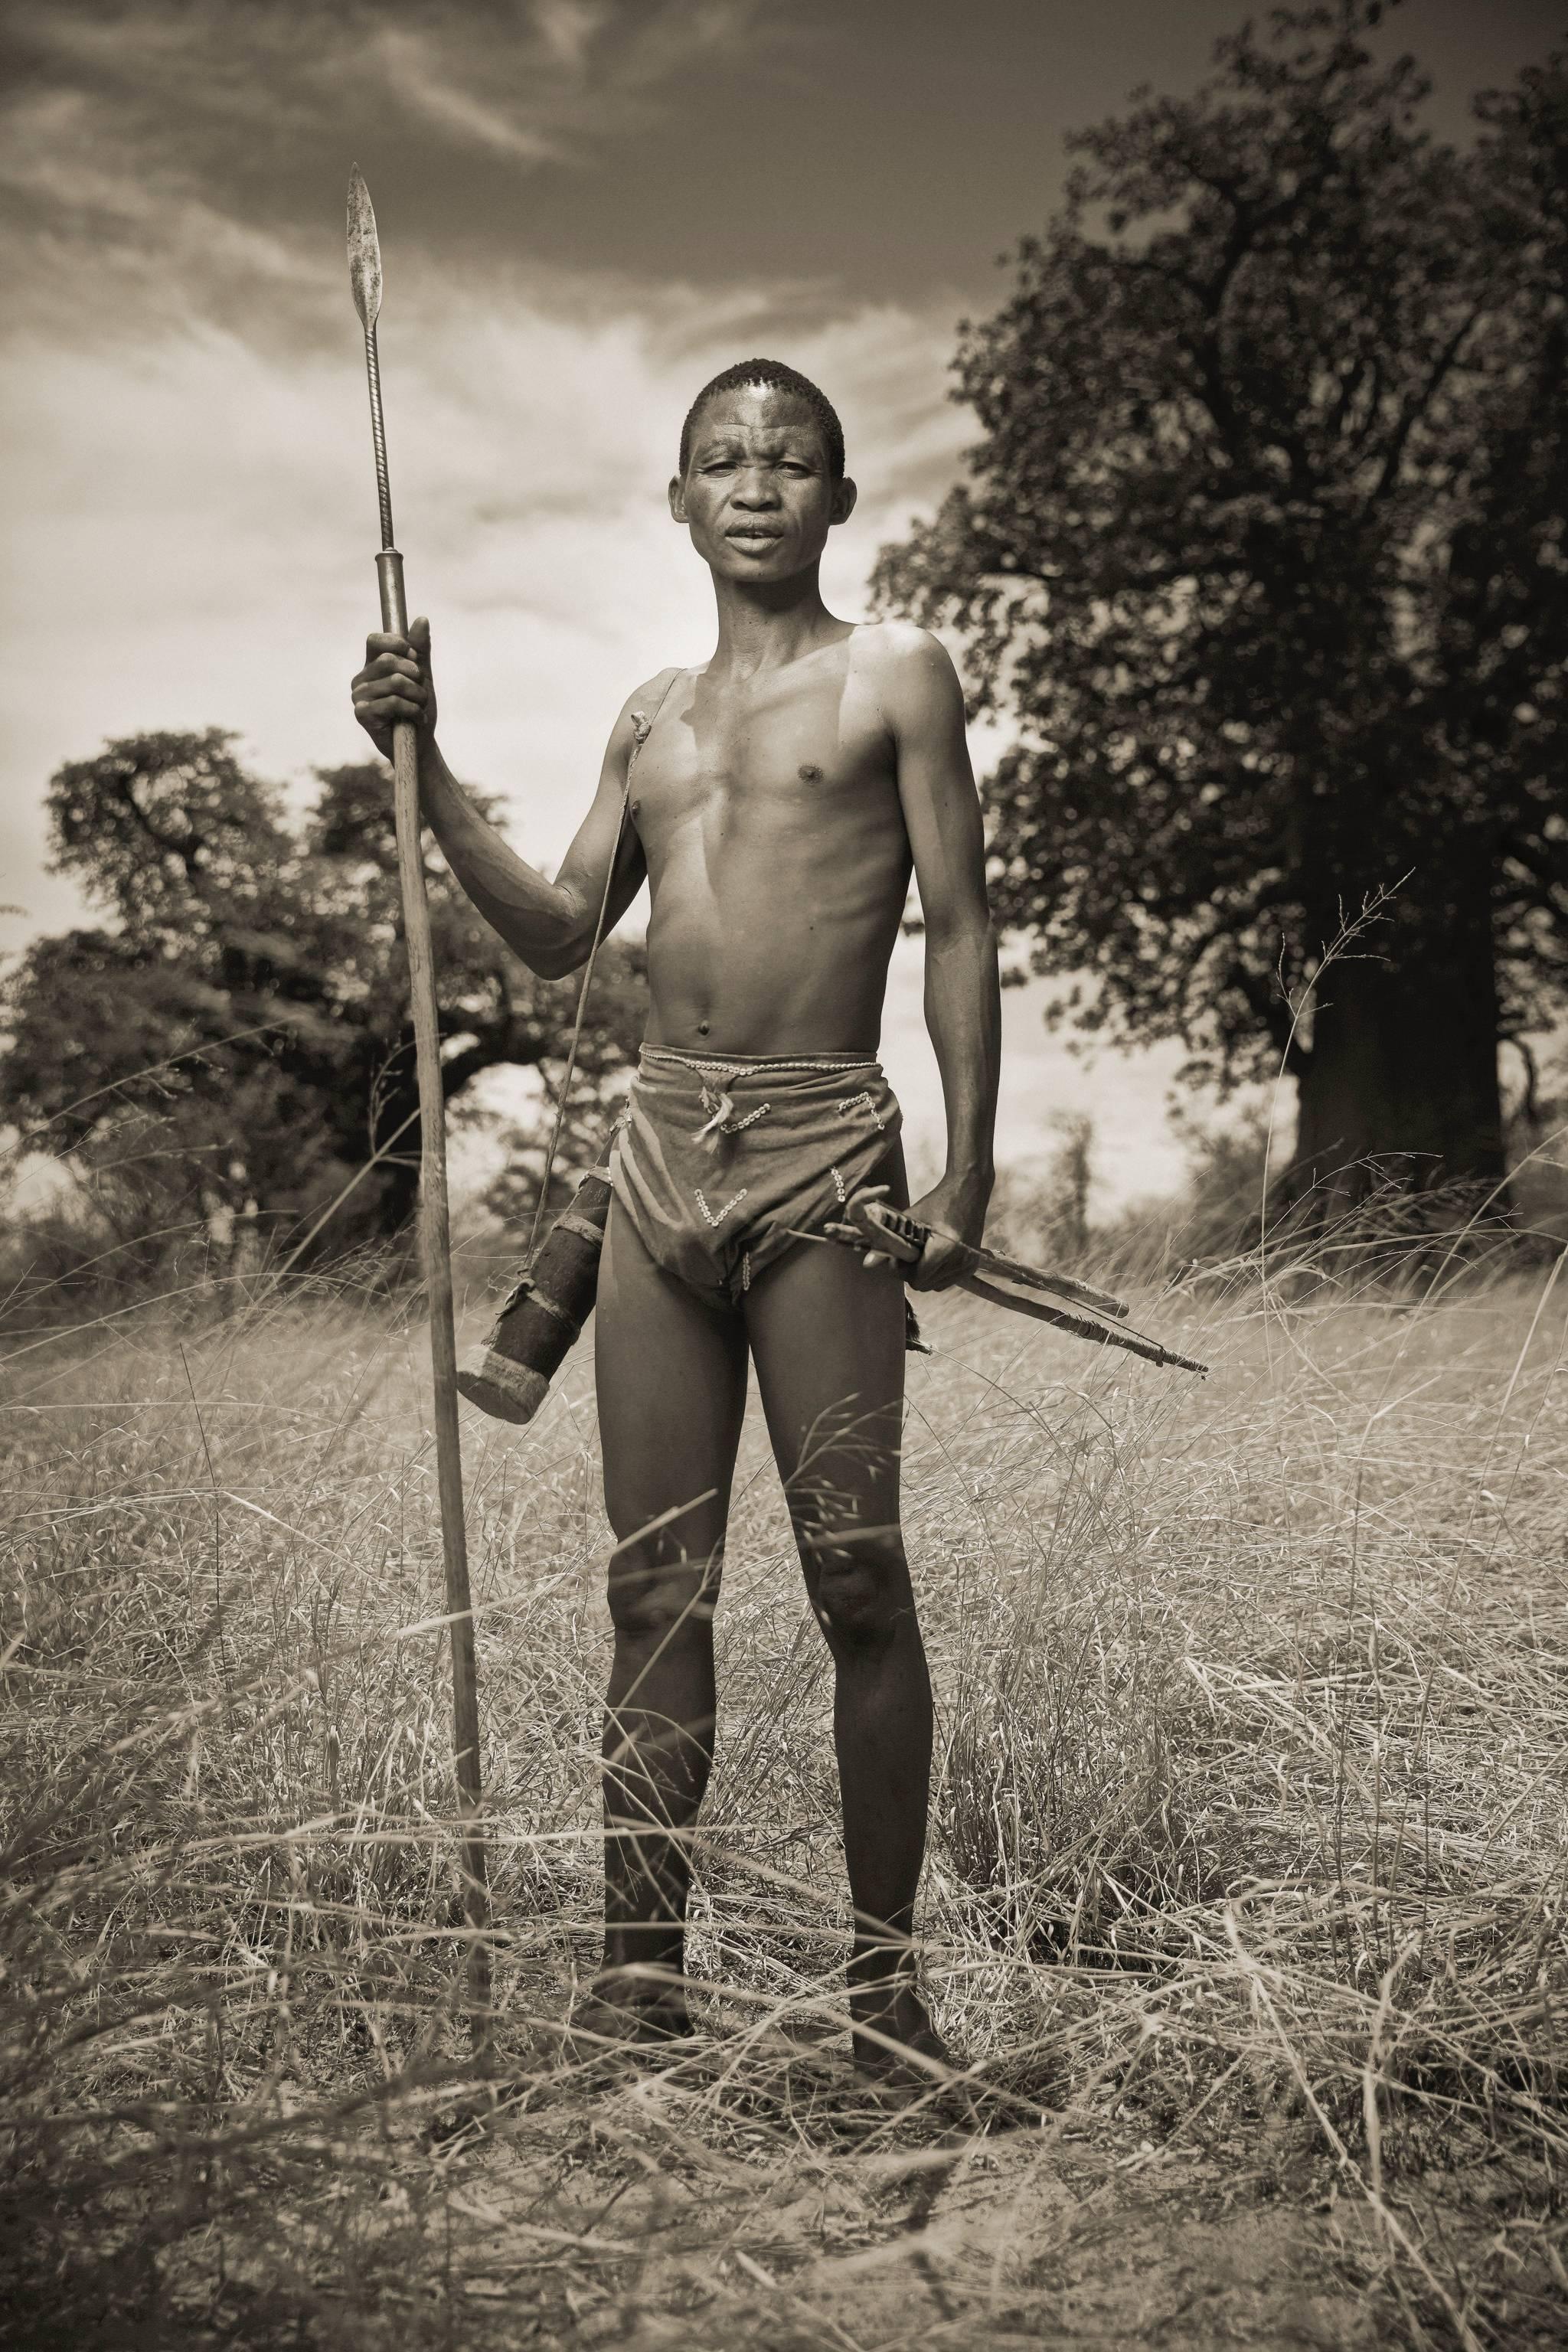 San Bushman 4 - Photograph by Chris Gordaneer